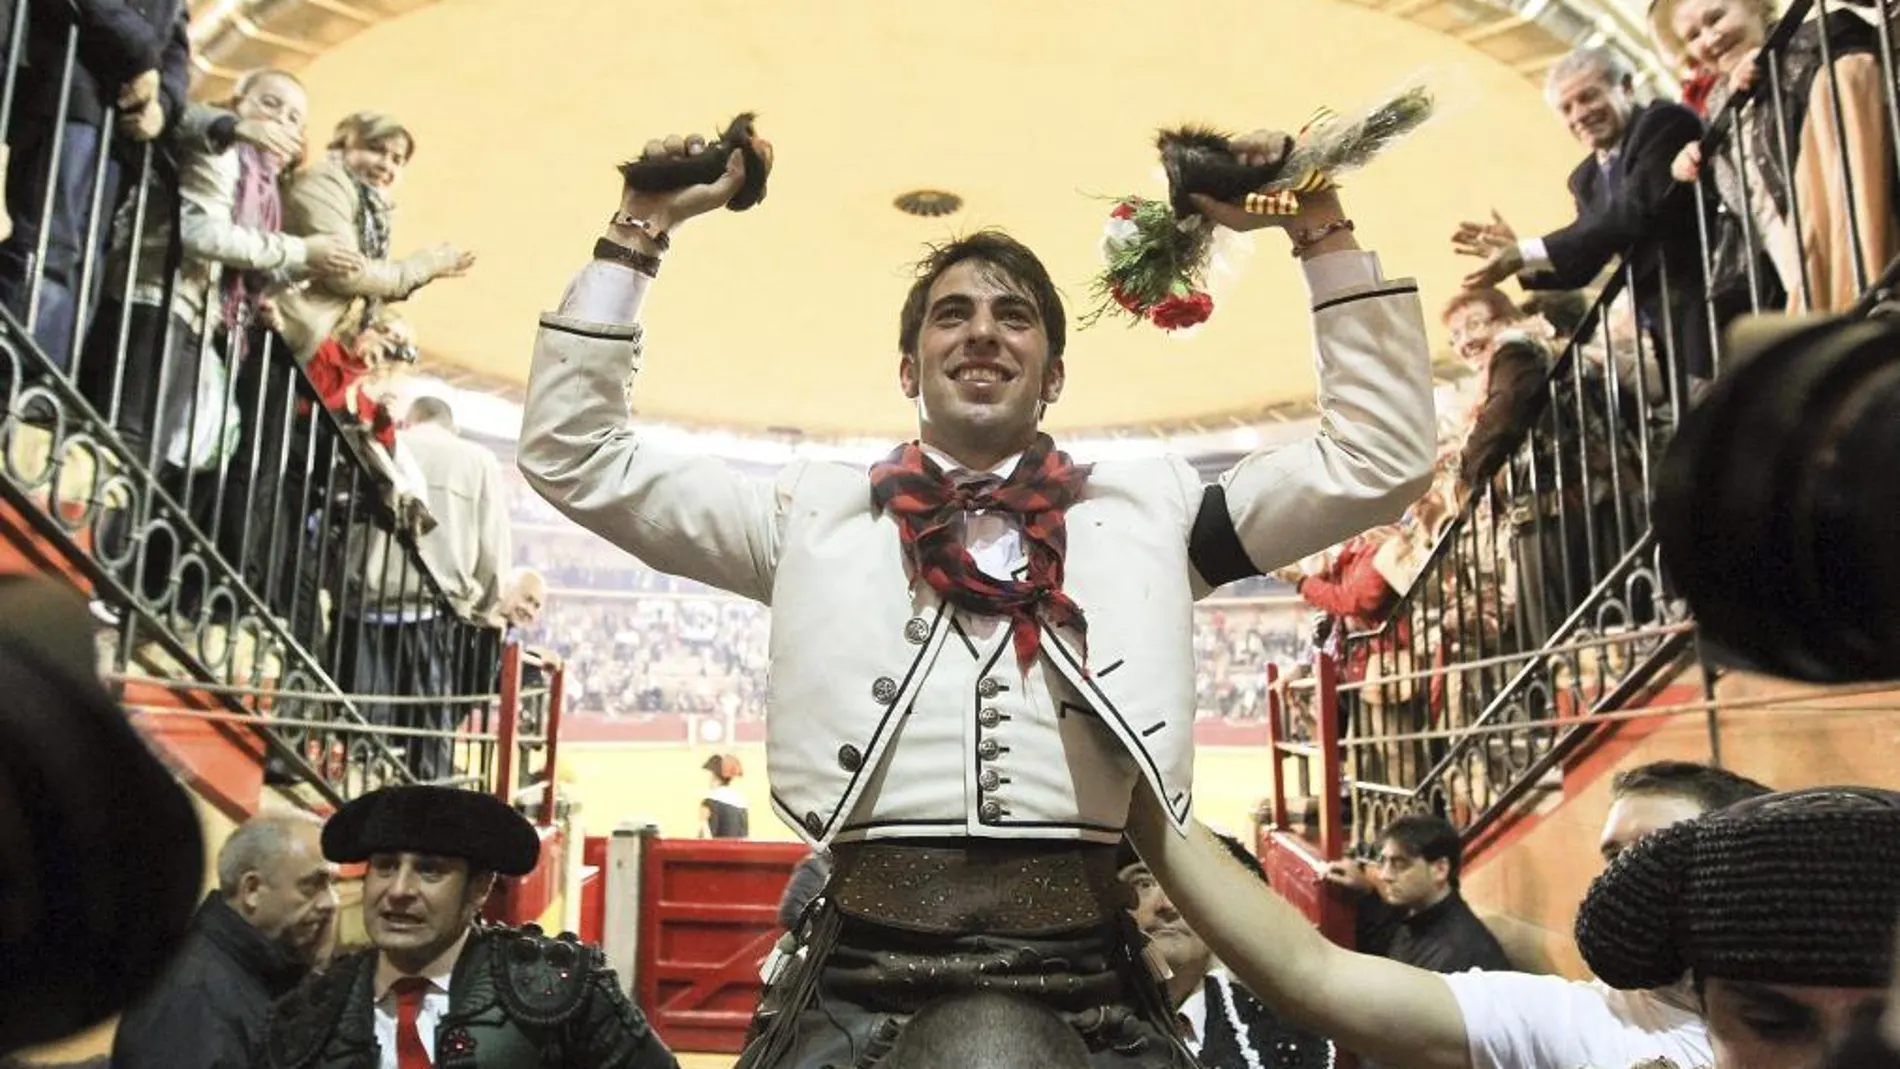 El rejoneador Roberto Armendáriz, incluido en el serial, abrió la puerta grande de Zaragoza en la última Feria del Pilar